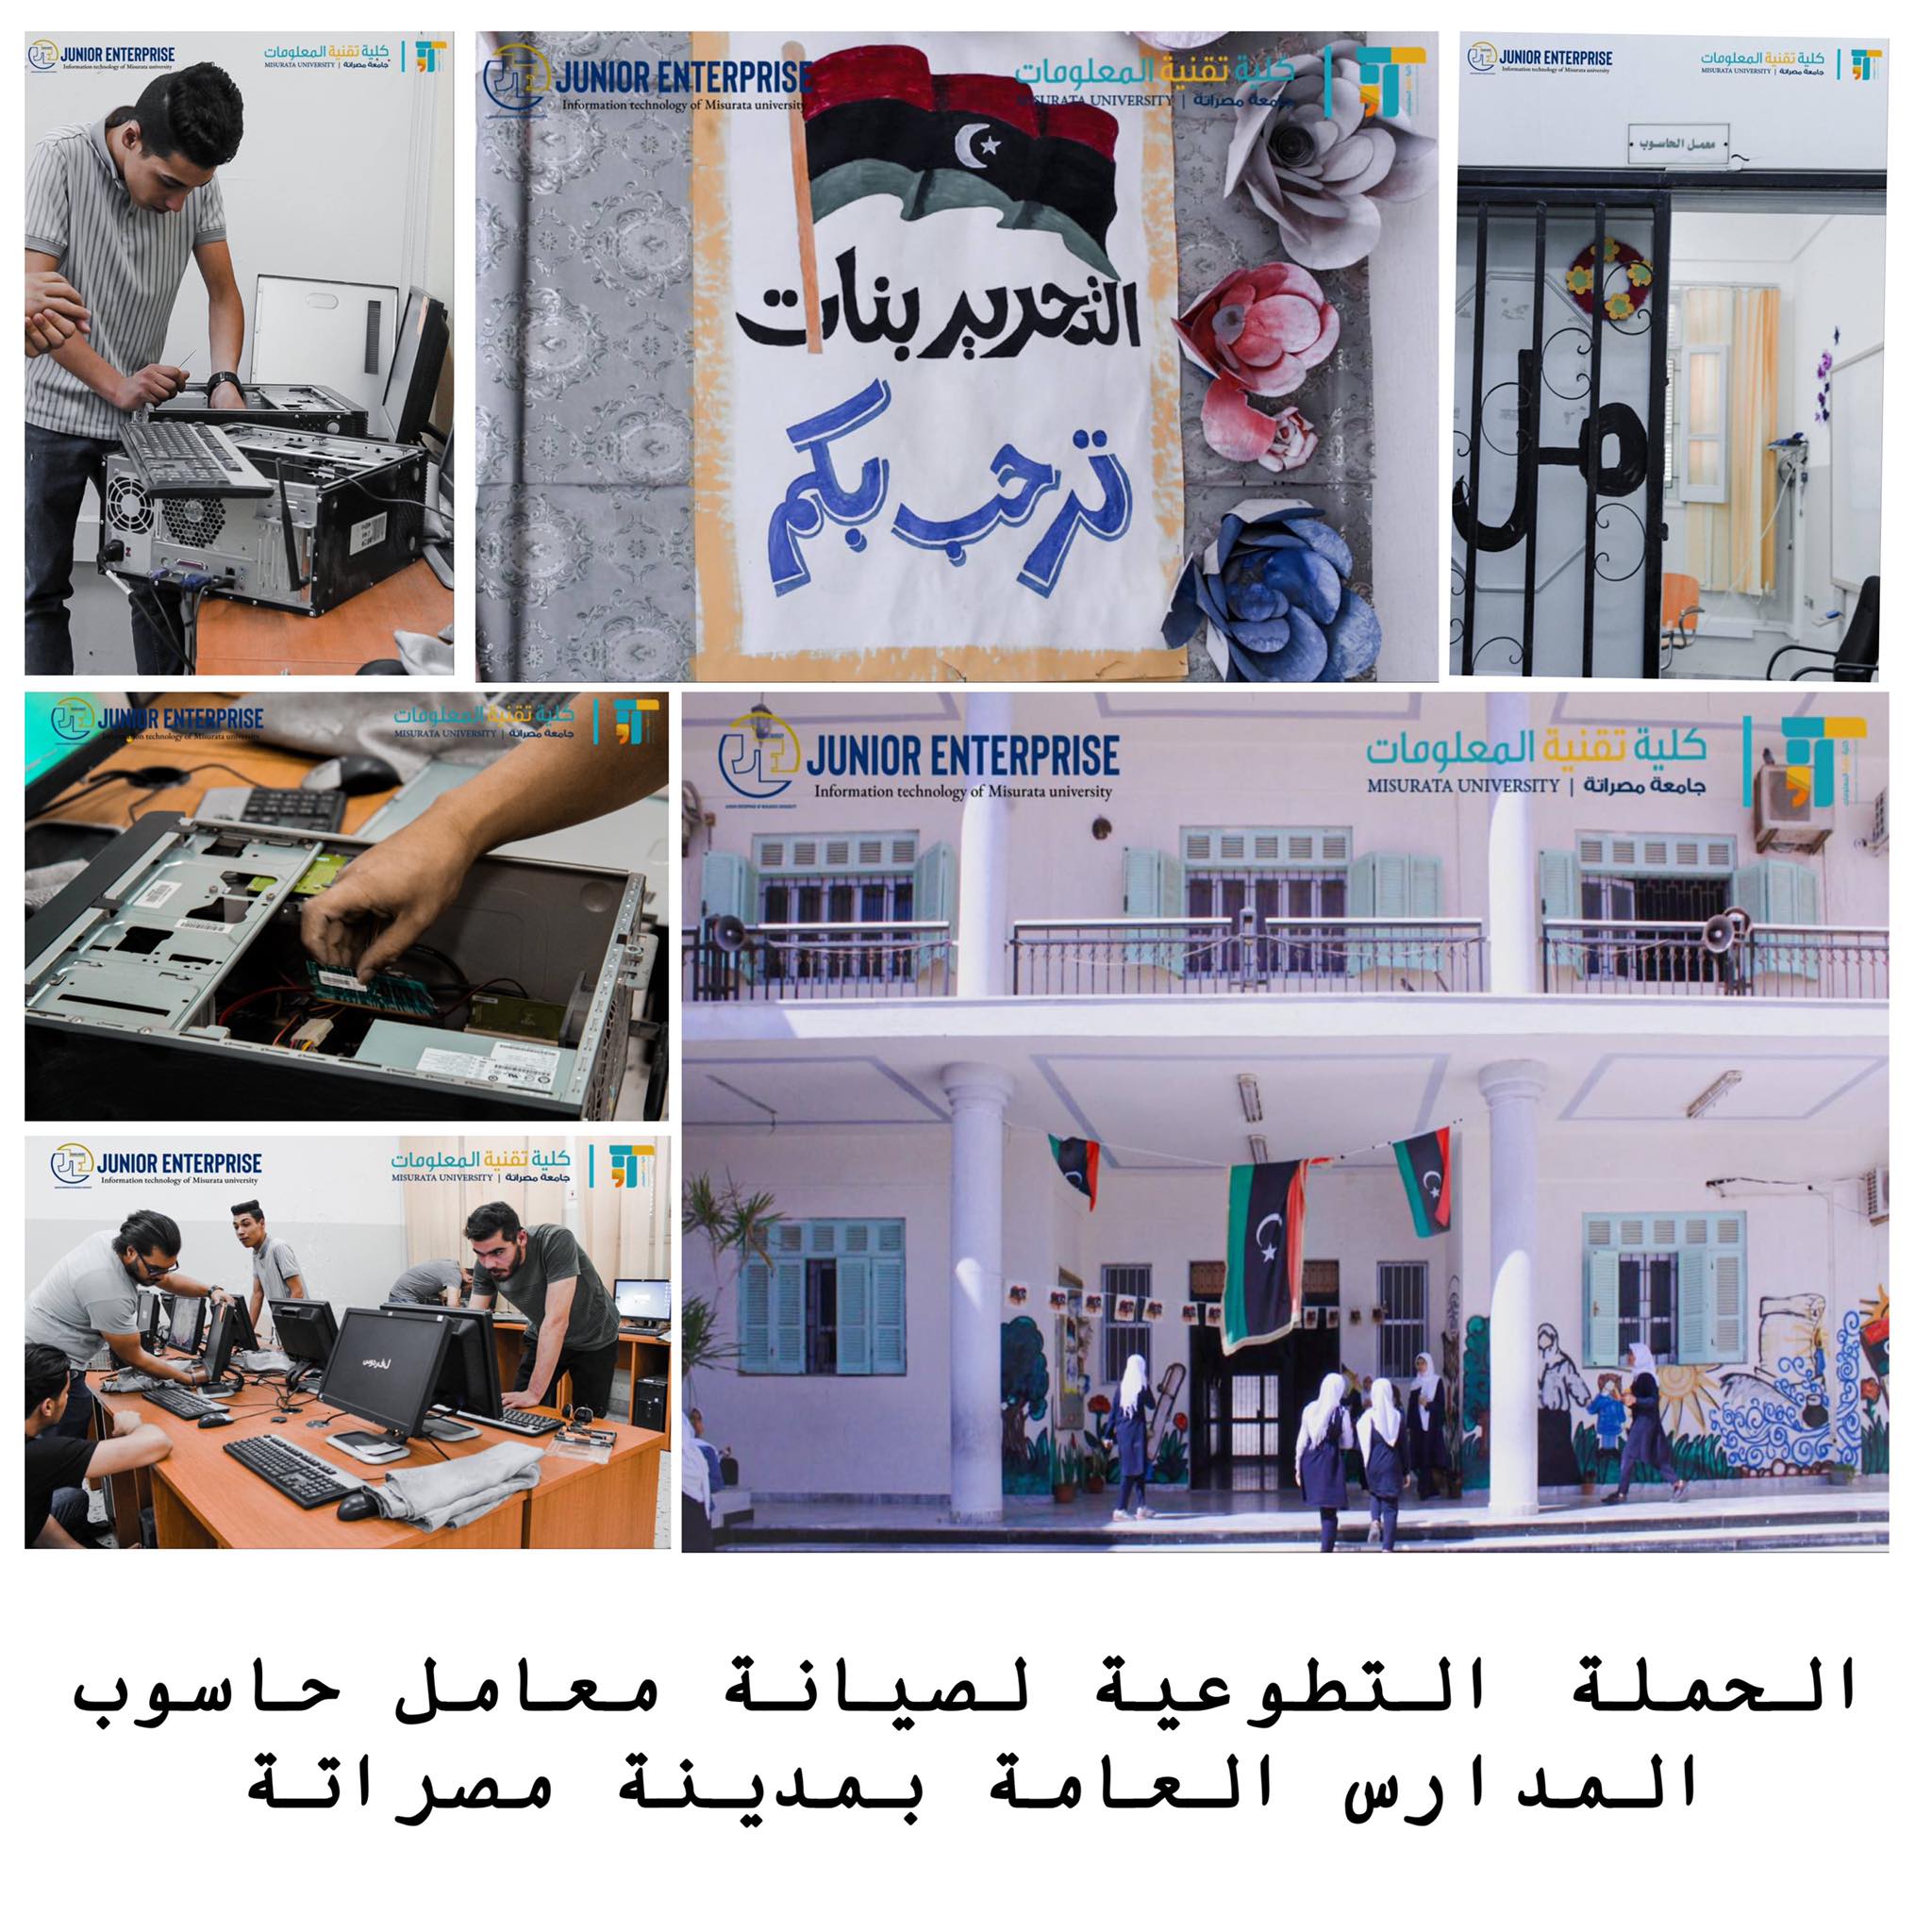 (الحملة التطوعية لصيانة معامل حاسوب المدارس العامة بمدينة مصراتة)